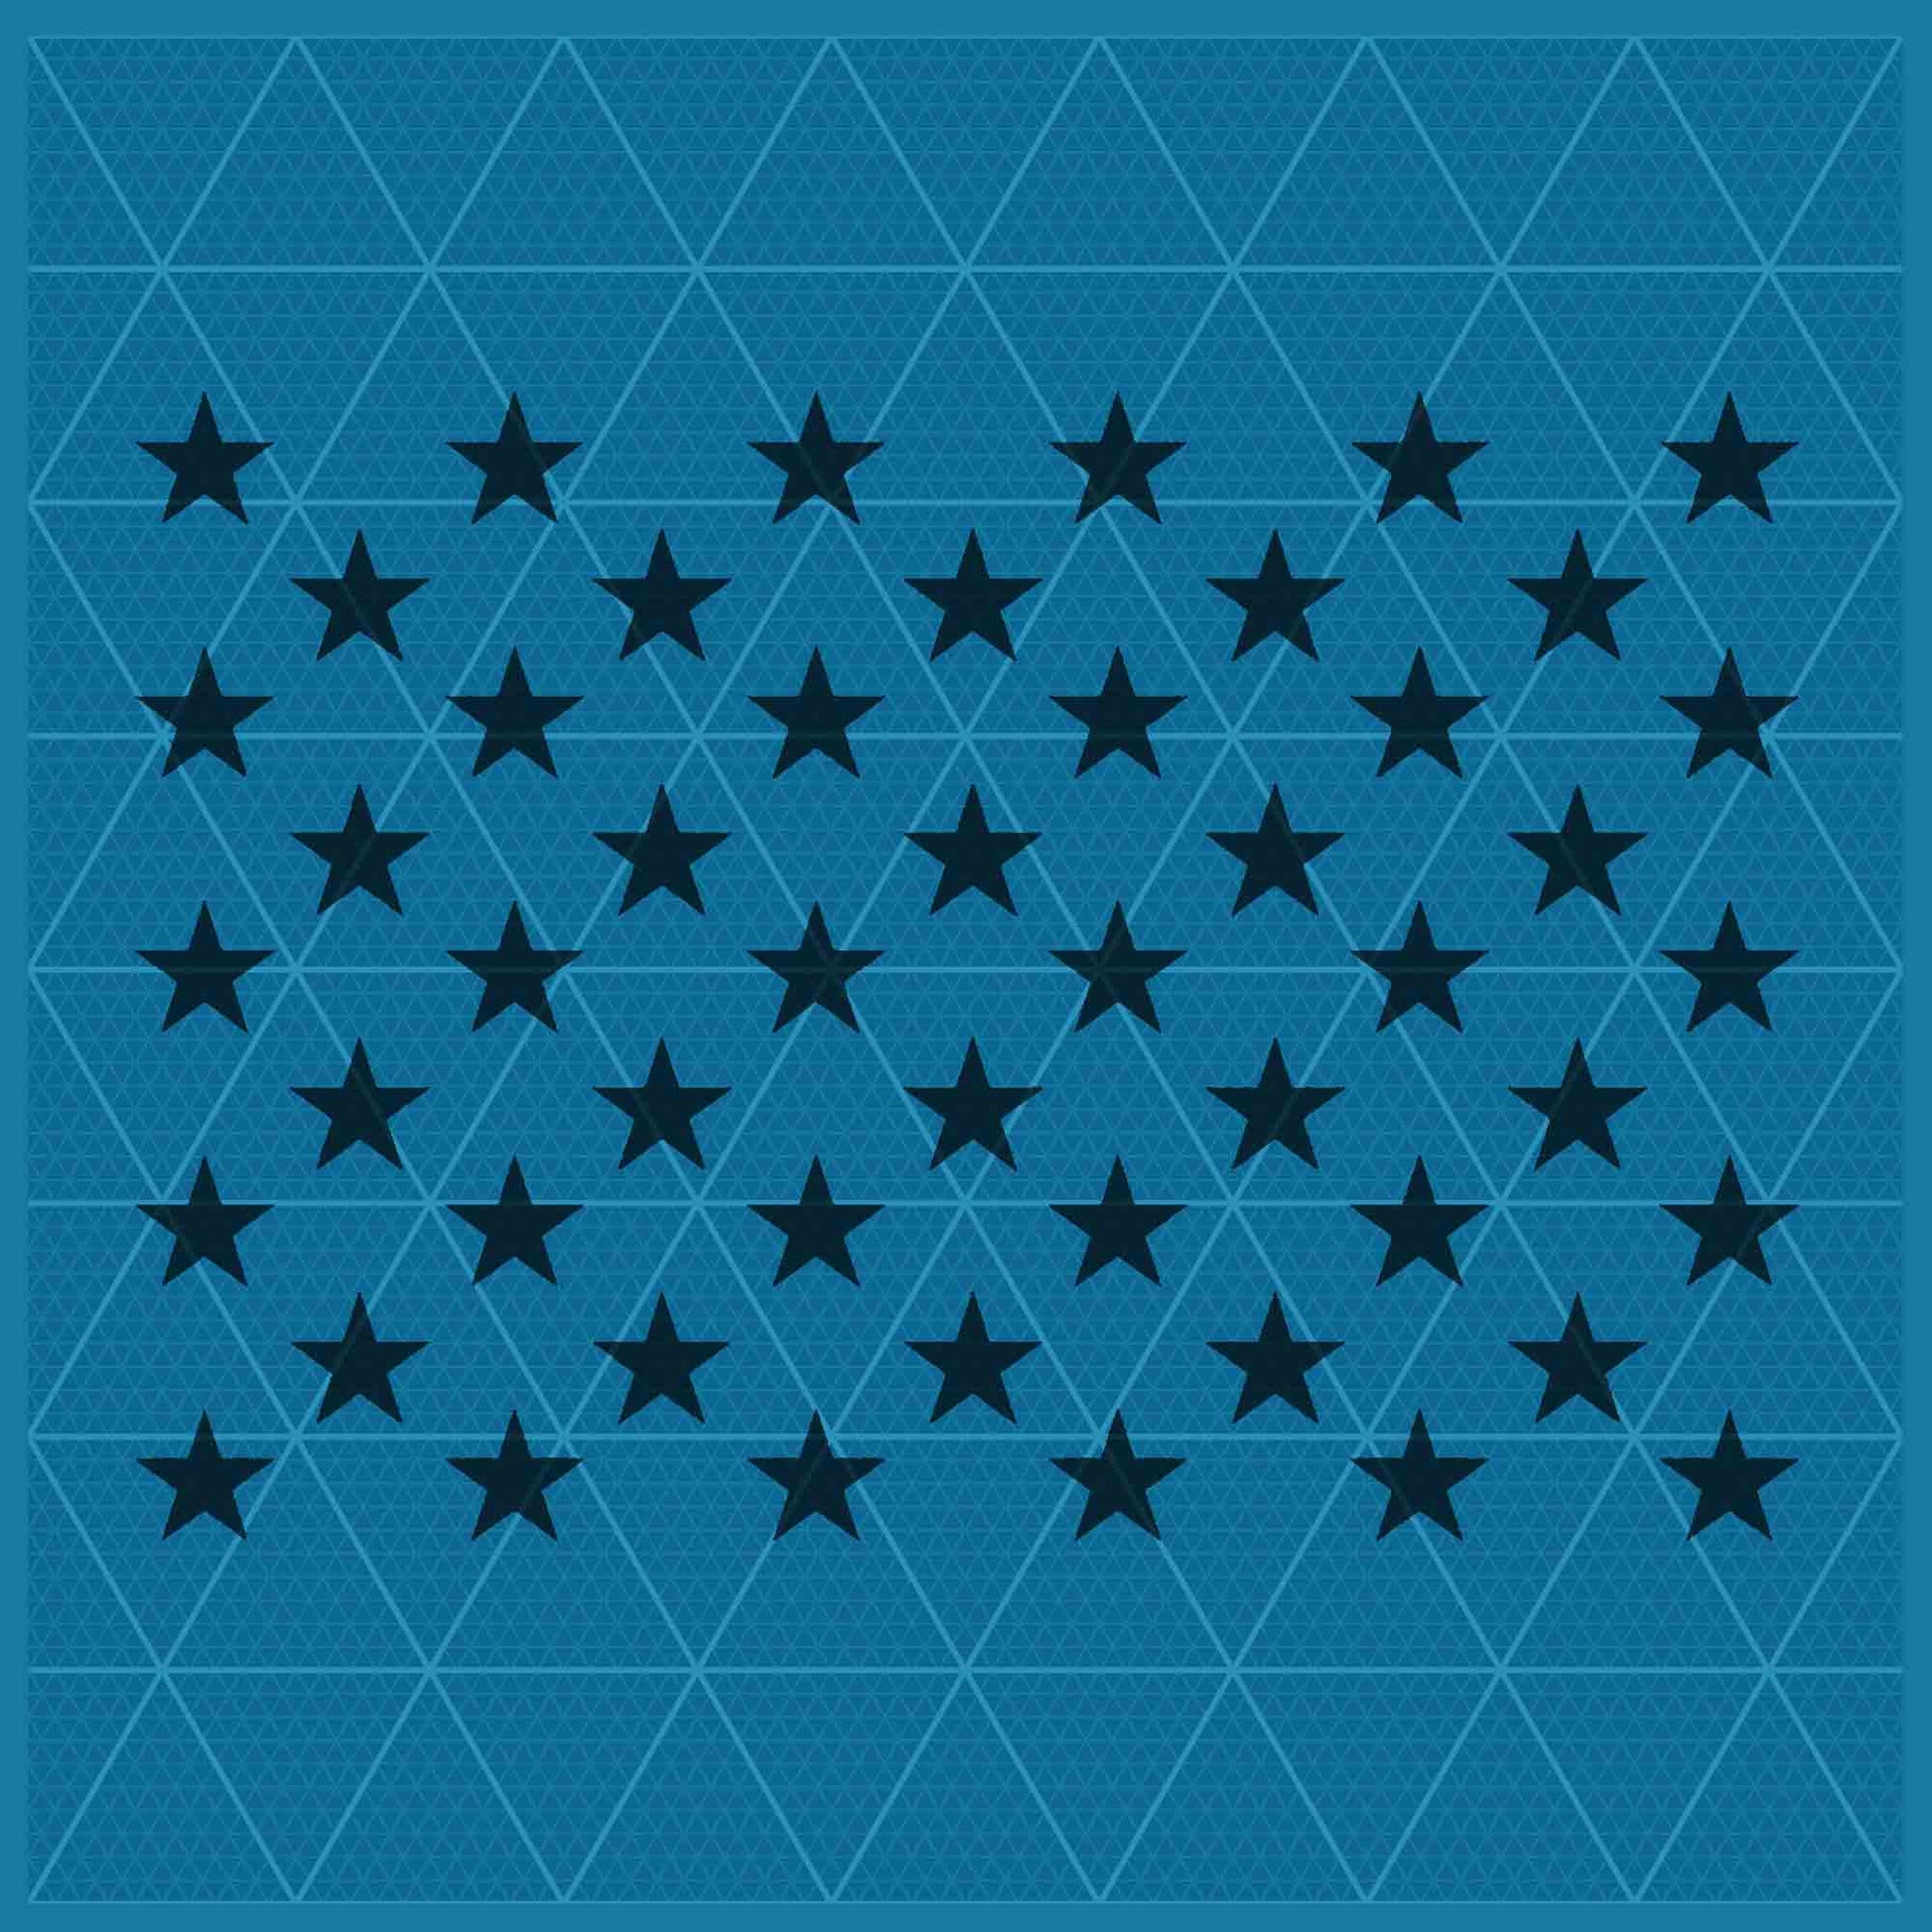 50 STARS STENCIL - Lazy Stencils